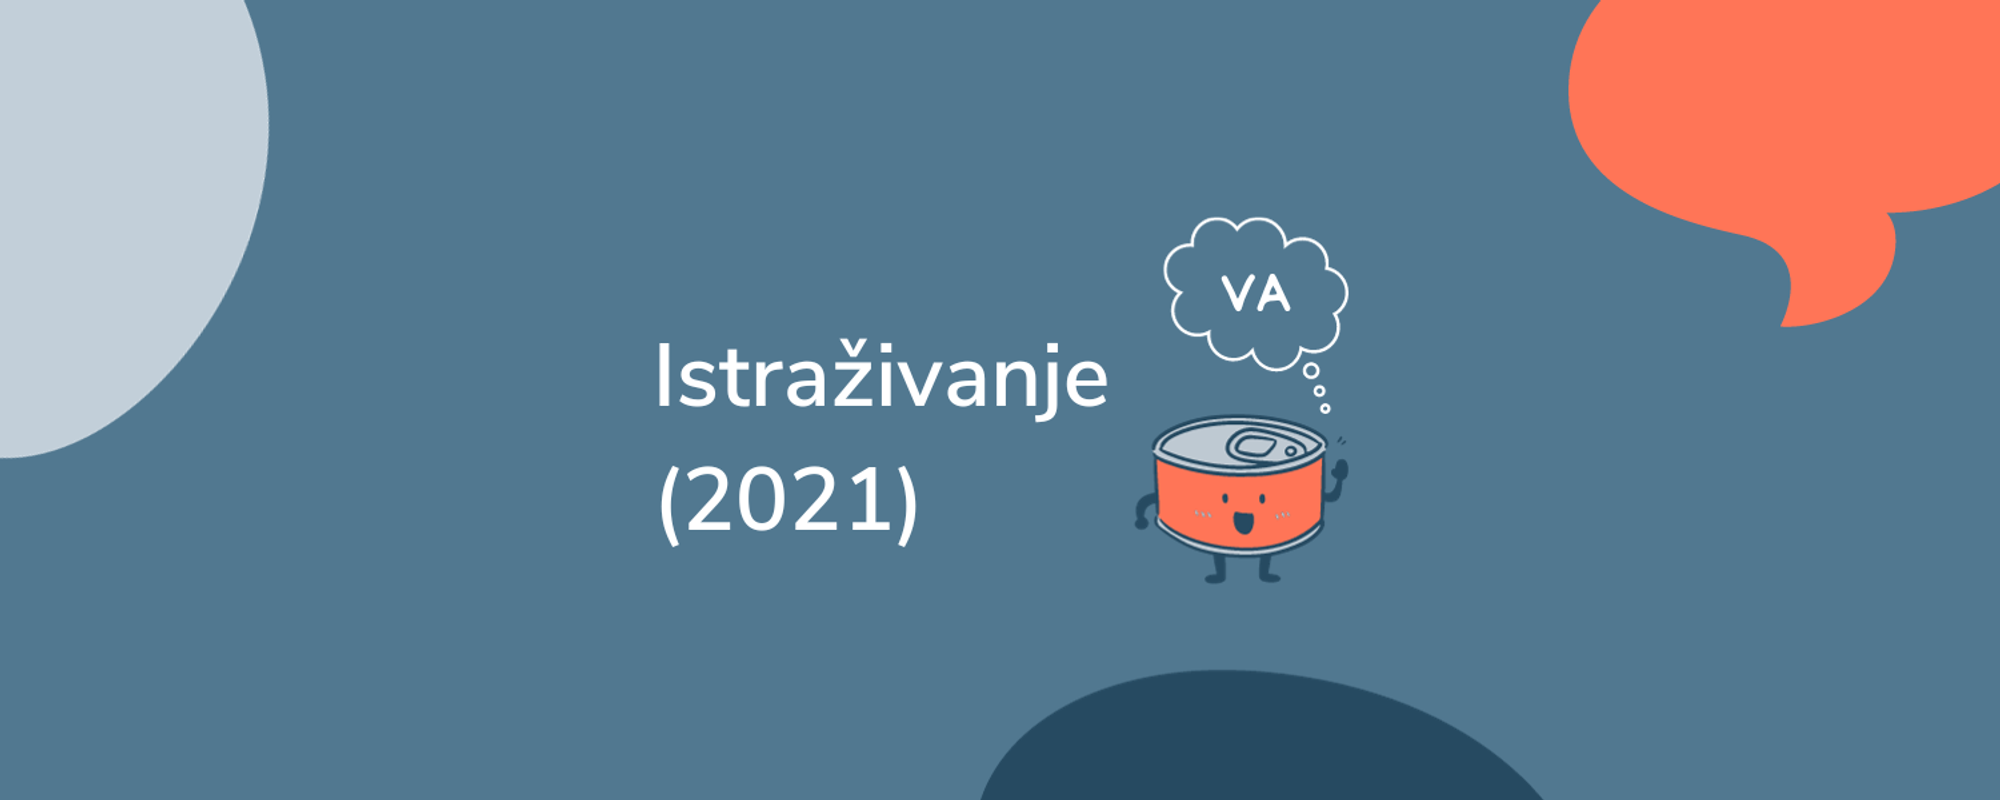 Istraživanje o virtualnim asistentima u Hrvatskoj [vol. 2] 